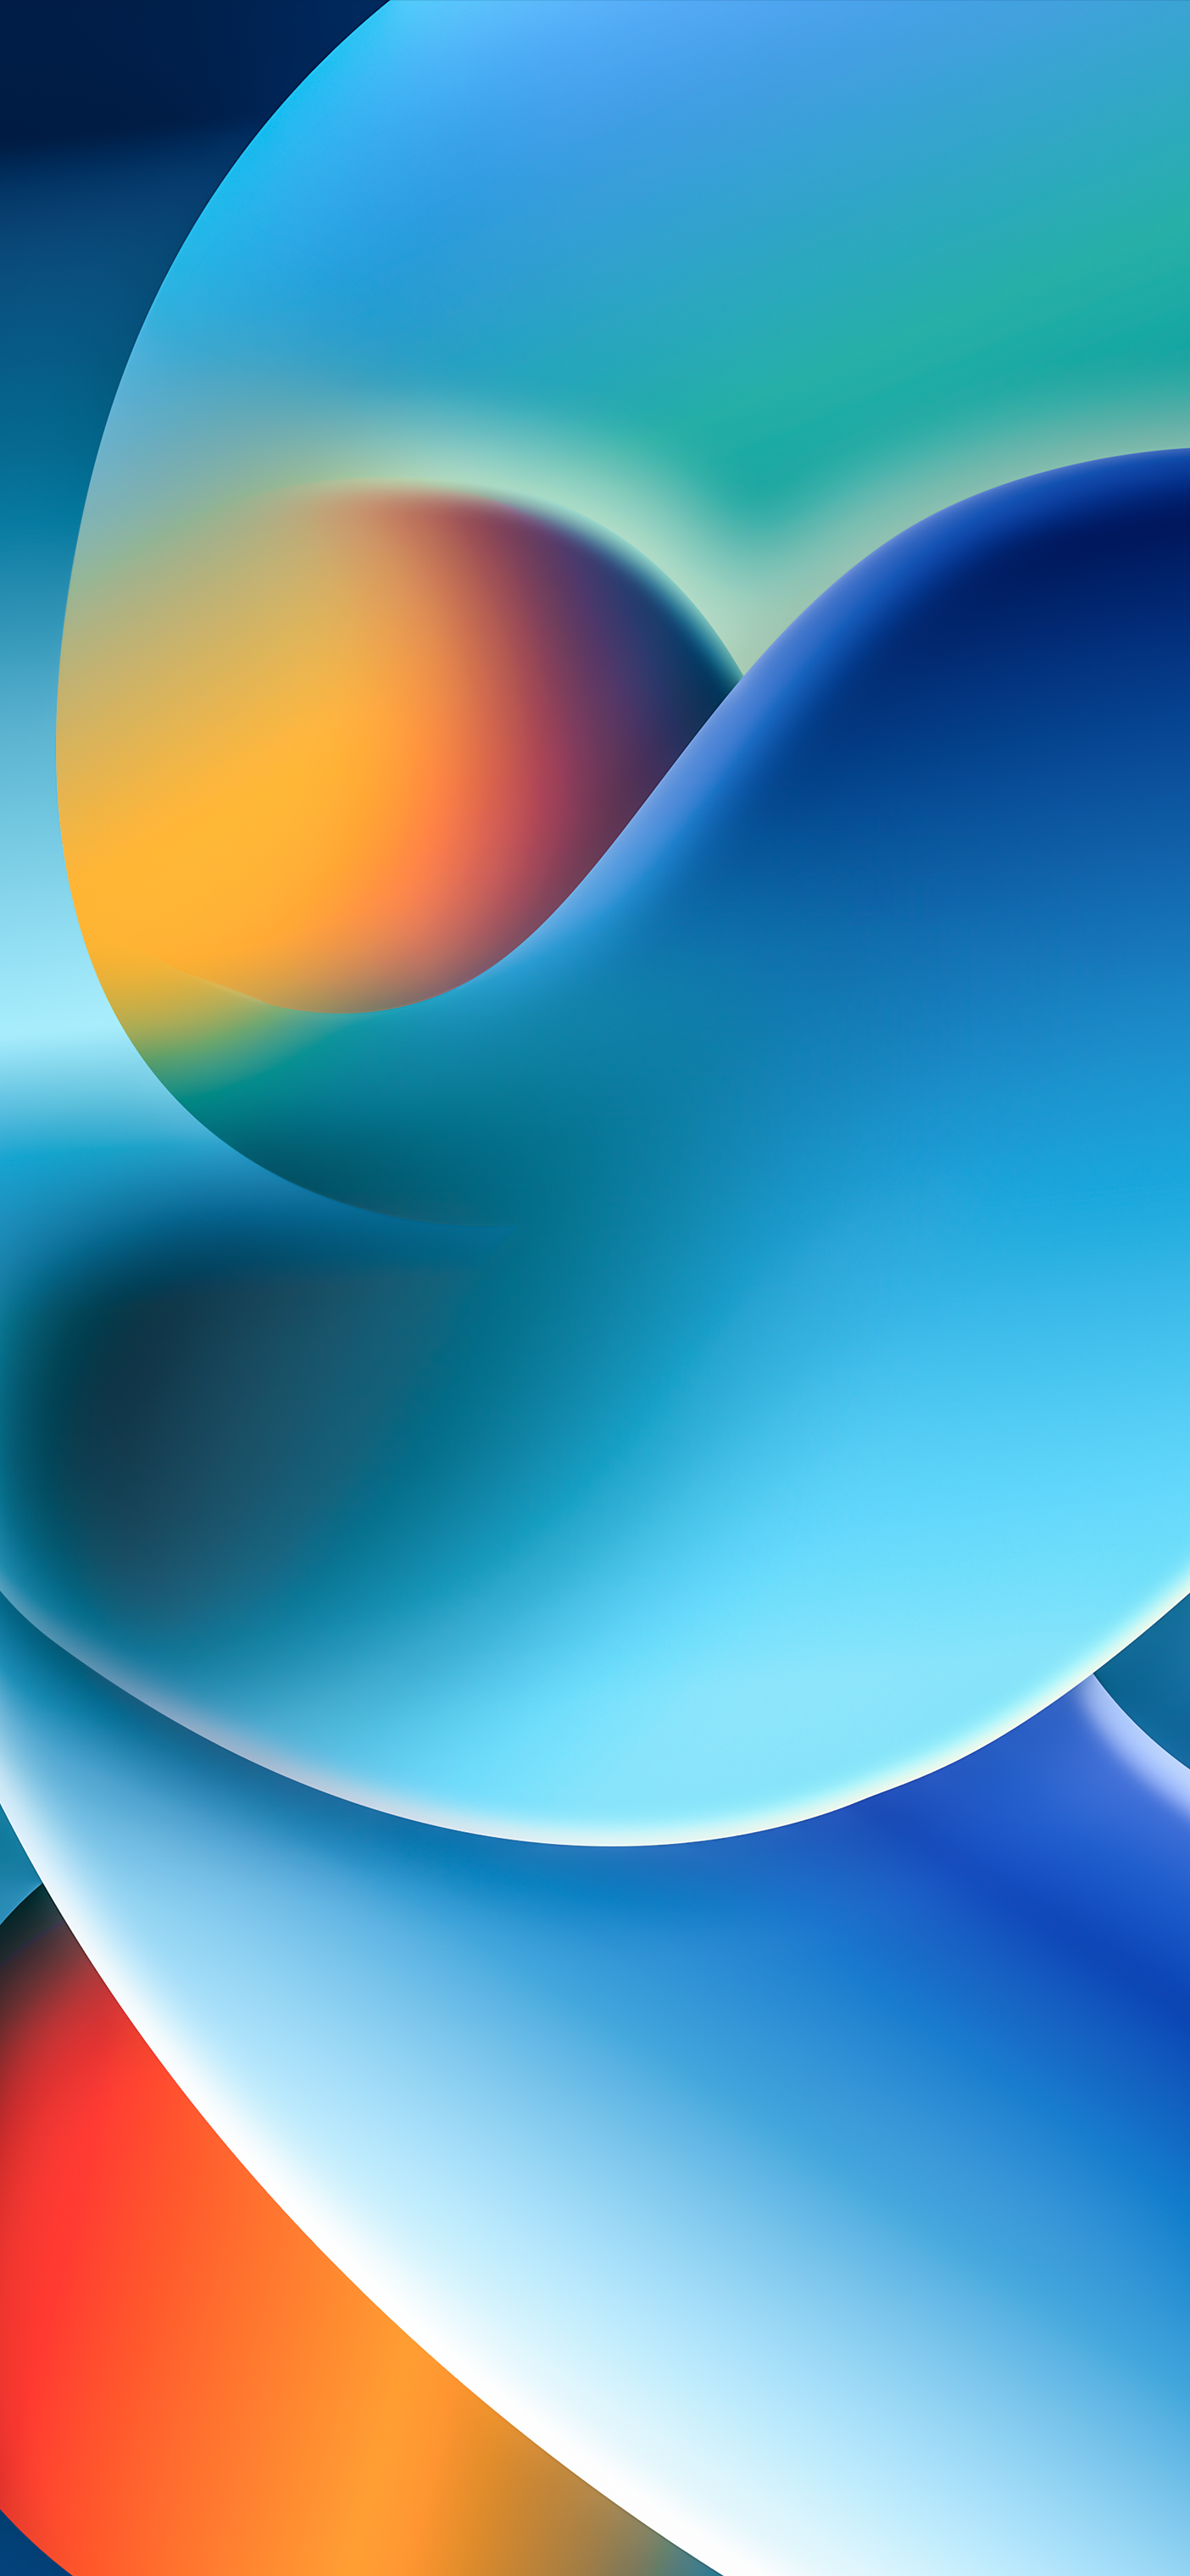 Hãy trải nghiệm chiếc điện thoại của bạn với hình nền tuyệt đẹp được thiết kế riêng cho iOS 16 - Hk3ToN với đường xoáy màu xanh đẹp mắt. Hãy nhấp chuột vào ảnh để tải xuống ngay hình nền độc đáo này và trang trí cho chiếc iPhone của bạn.